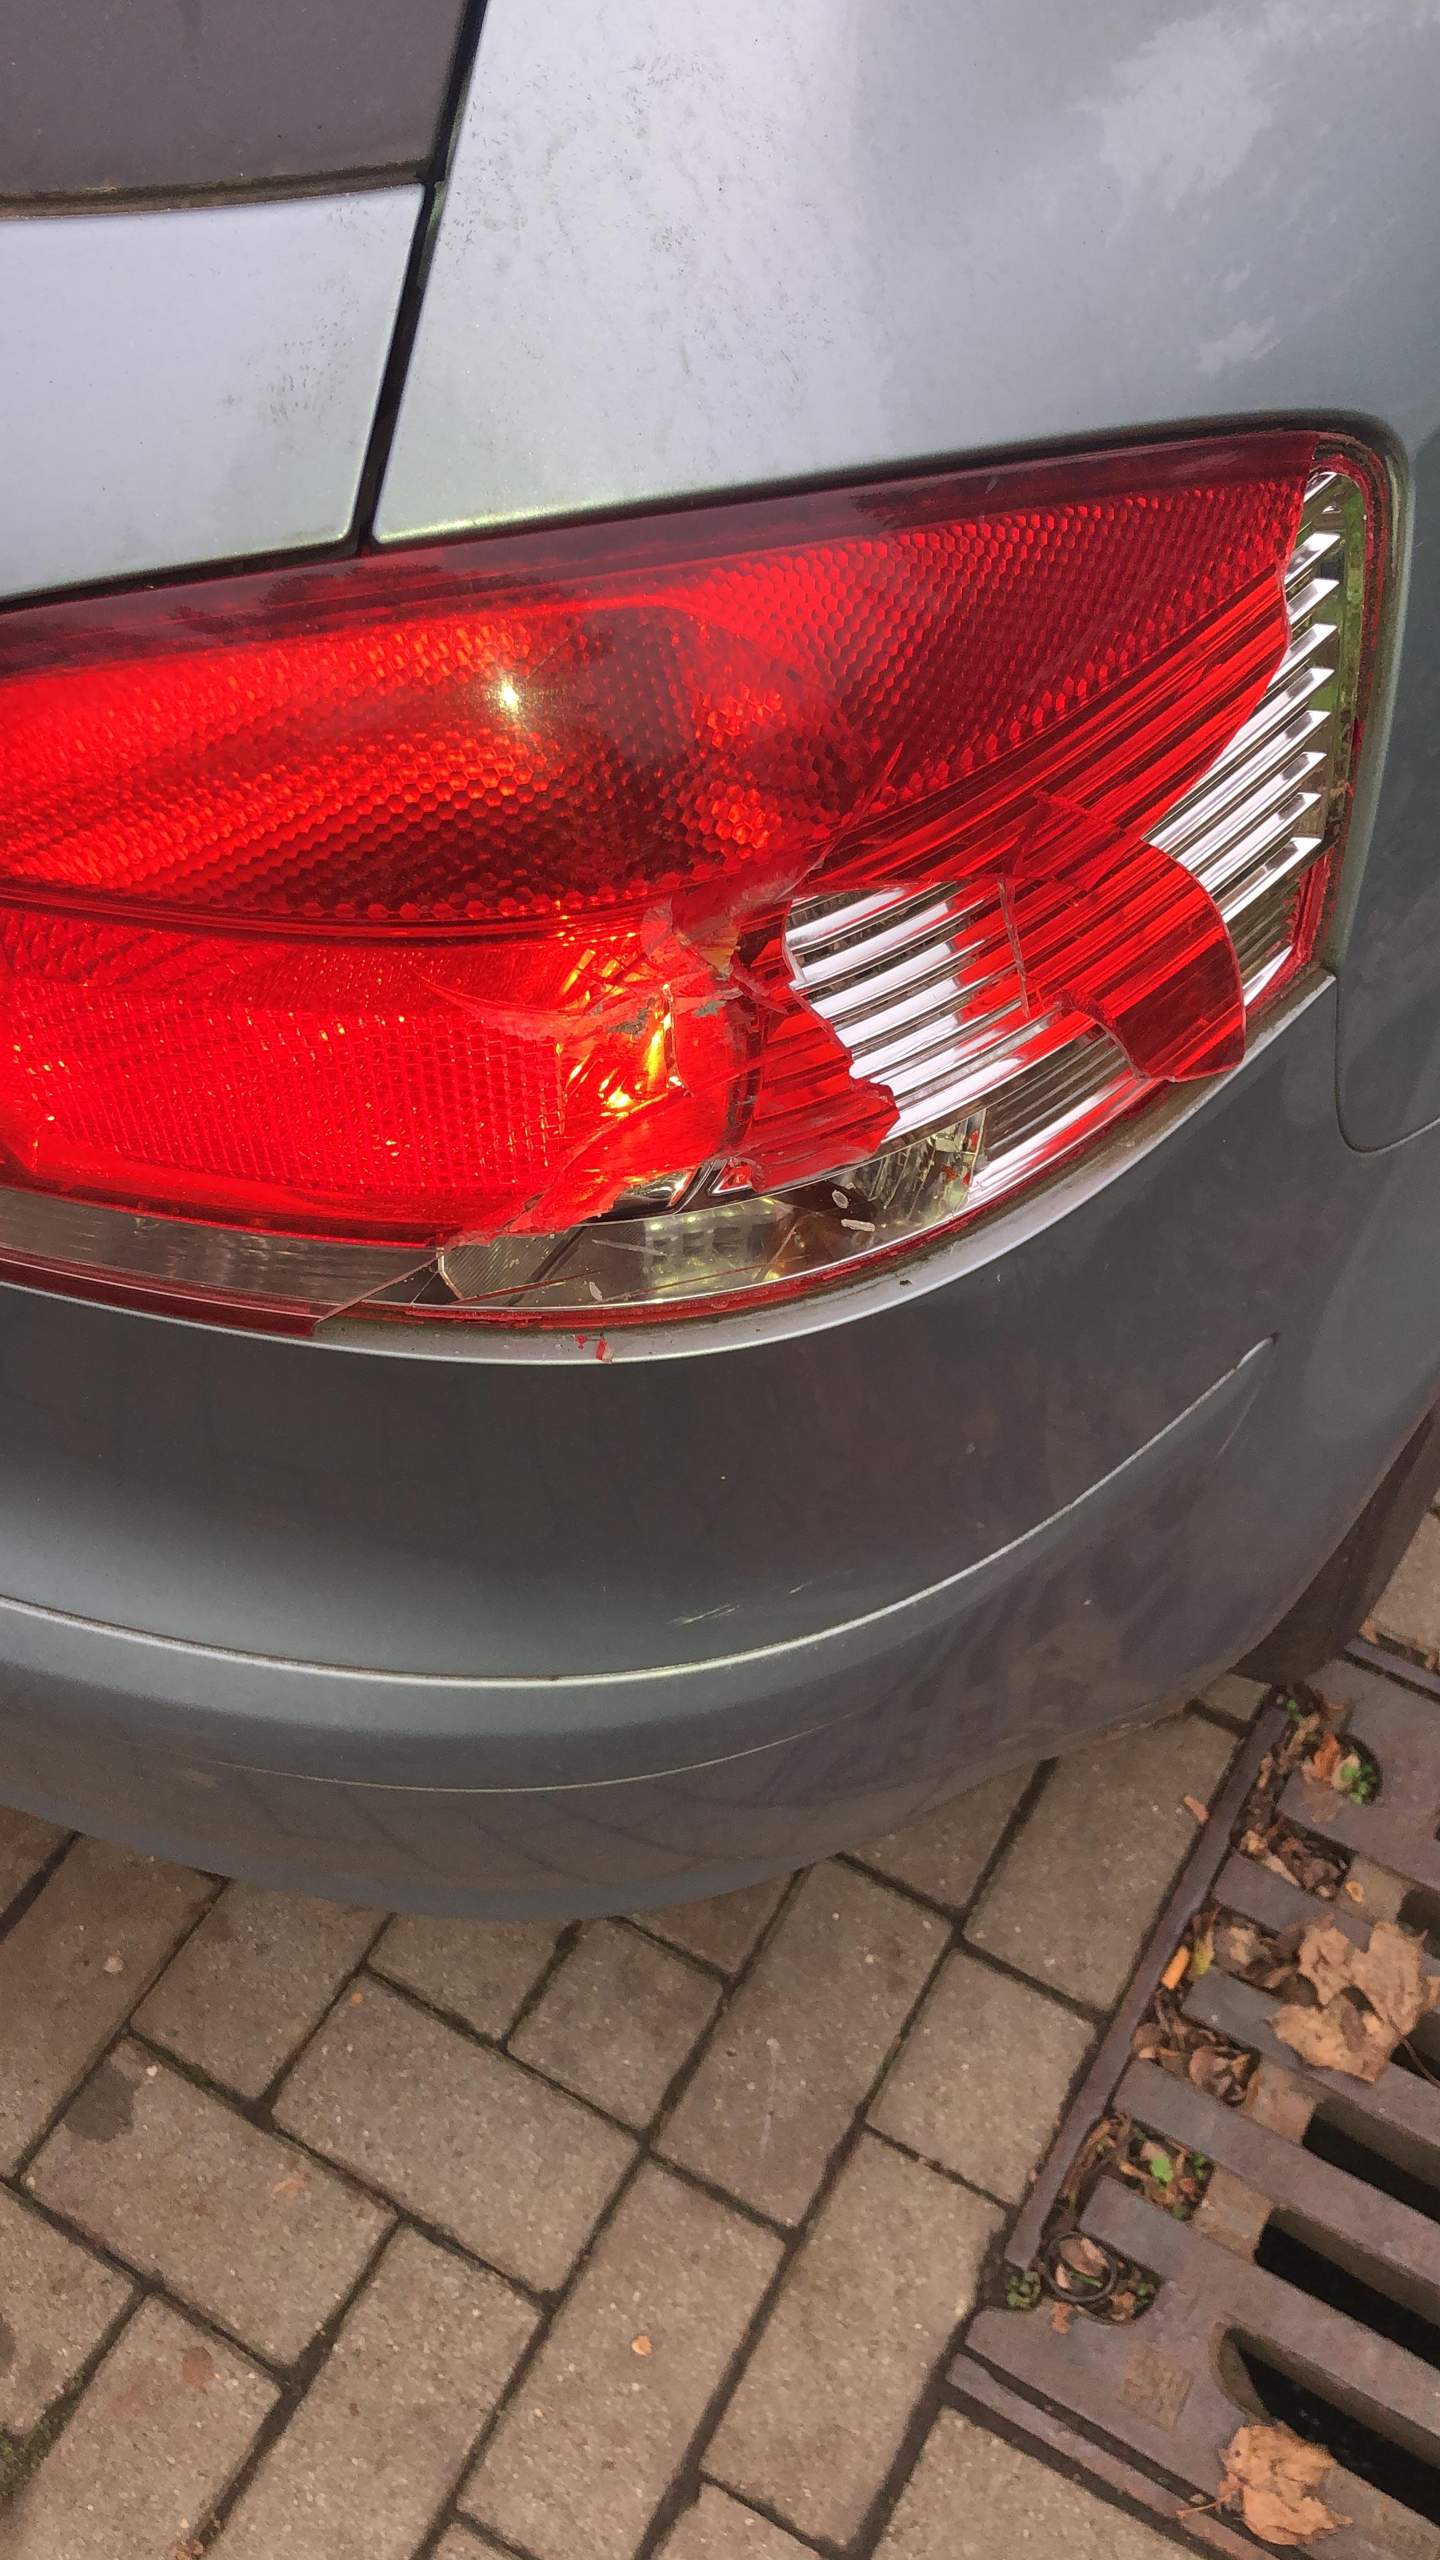 Plastik von Audi A3 Rückleuchte kaputt? (Auto, Auto und Motorrad,  Rückleuchten)